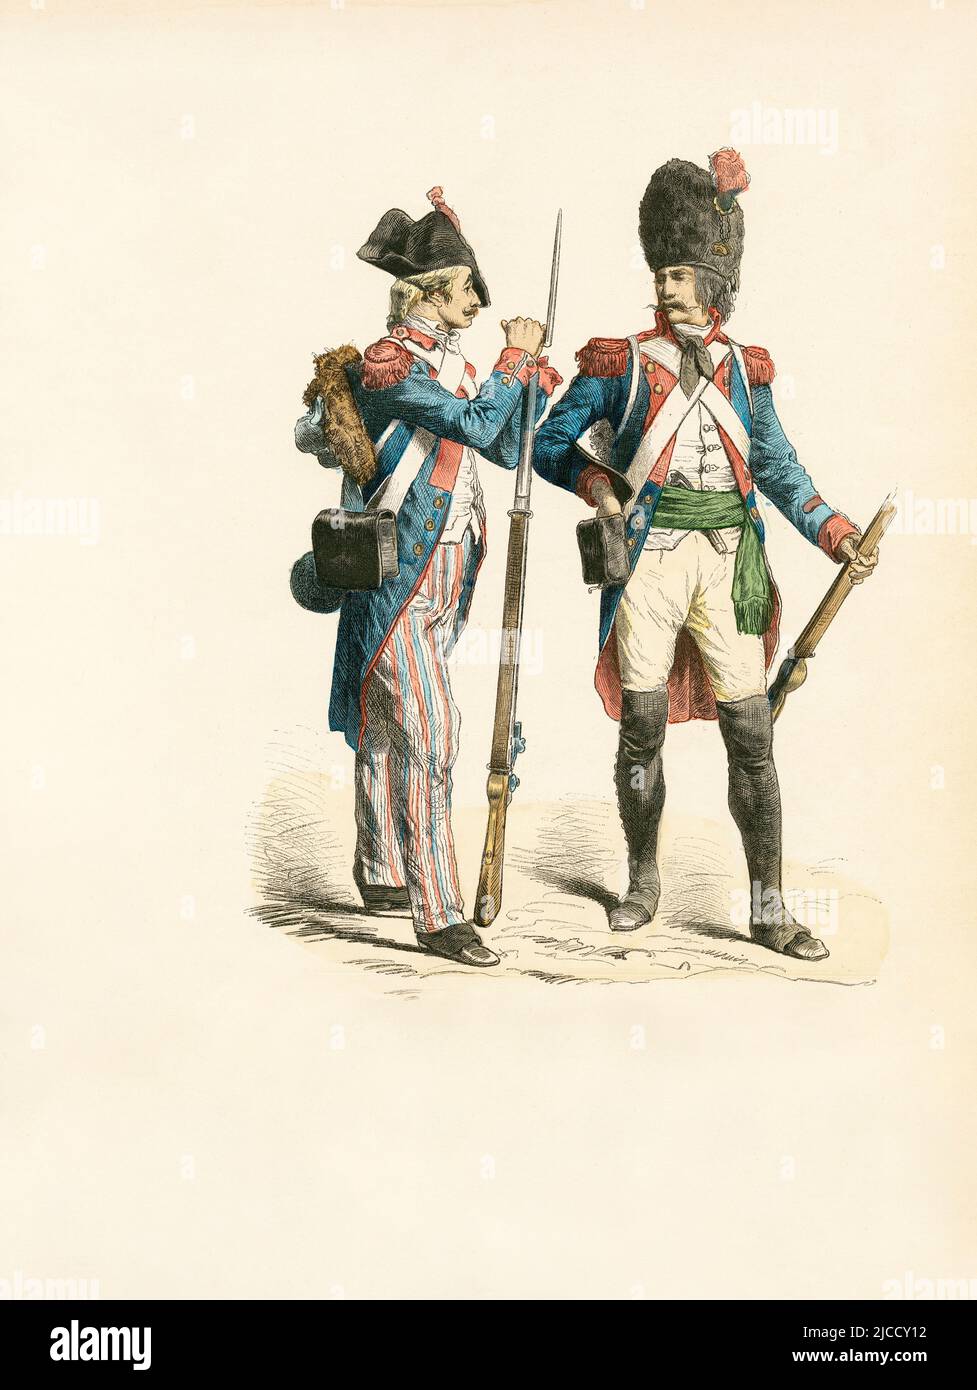 Infantryman (1799), Grenadier (1795), French Republic, Illustration, The History of Costume, Braun & Schneider, Munich, Germany, 1861-1880 Stock Photo